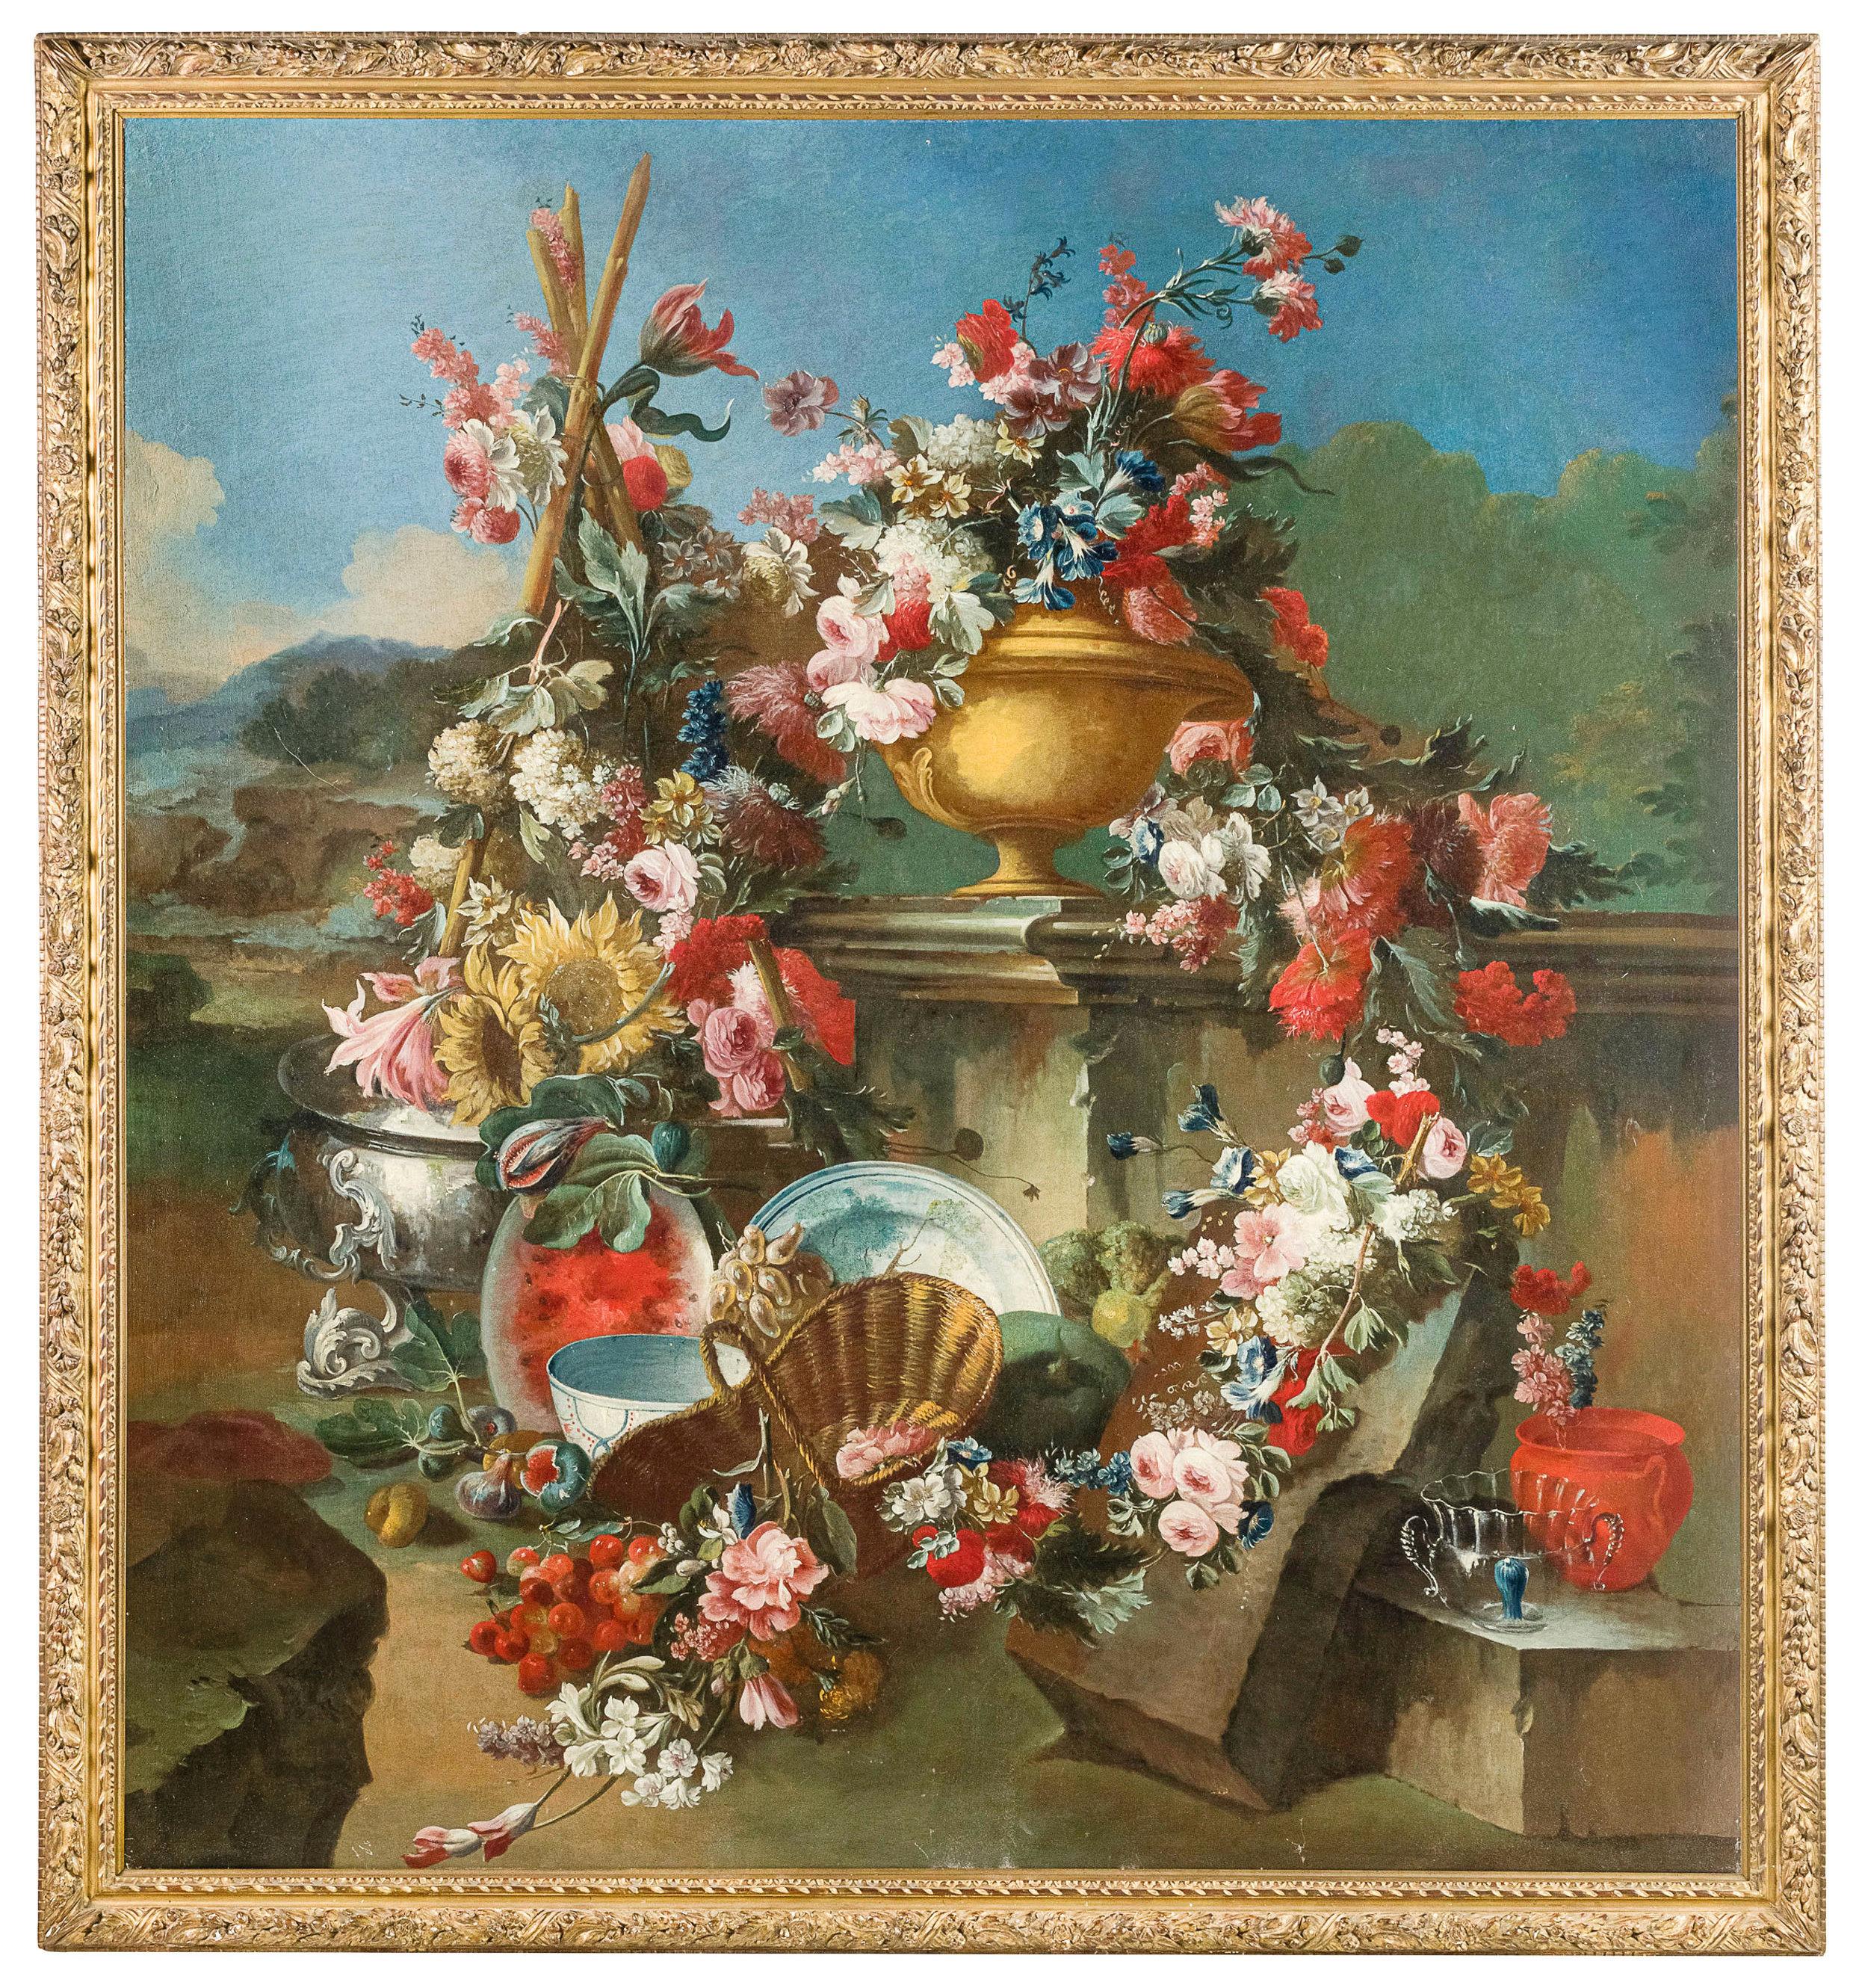 XVIIIe siècle, peinture italienne avec nature morte par Francesco Lavagna.

Le tableau fin et imposant, accompagné d'un cadre en bois sculpté et doré, représente une somptueuse composition de fleurs insérées dans un élégant environnement extérieur.